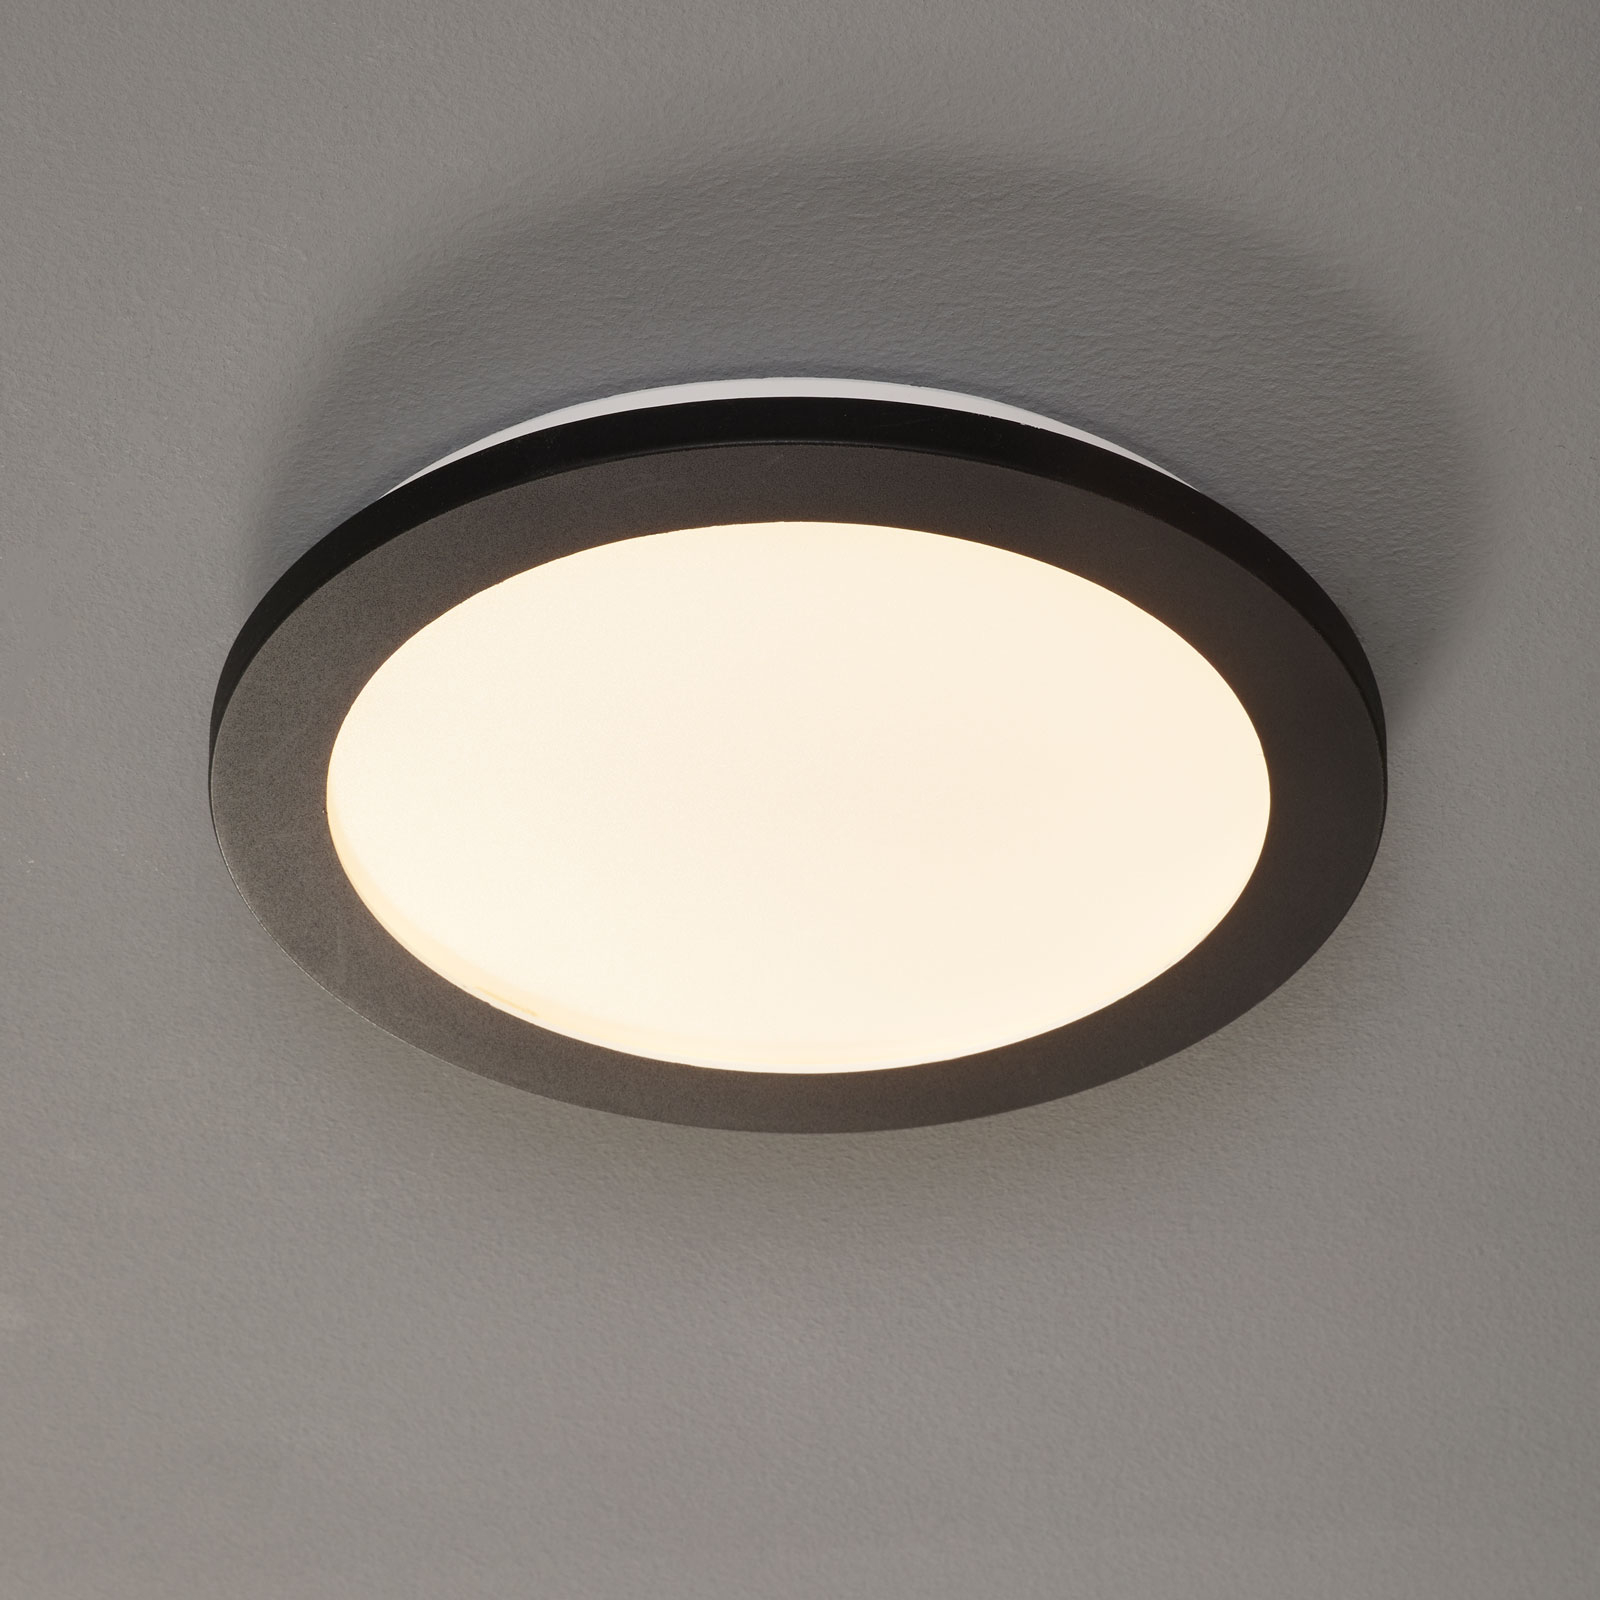 LED-loftlampe Camillus, rund, 26 cm